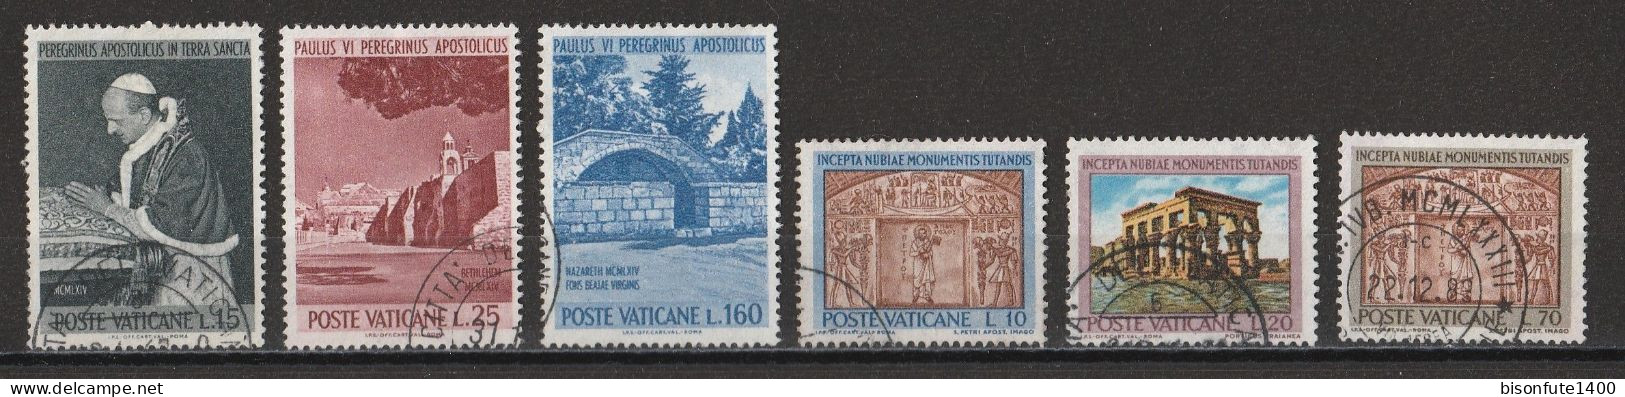 Vatican 1964 : Timbres Yvert & Tellier N° 393 - 394 - 396 - 397 - 398 - 399 - 400 - 401 - 402 - 403 Et 404 Oblitérés. - Gebruikt